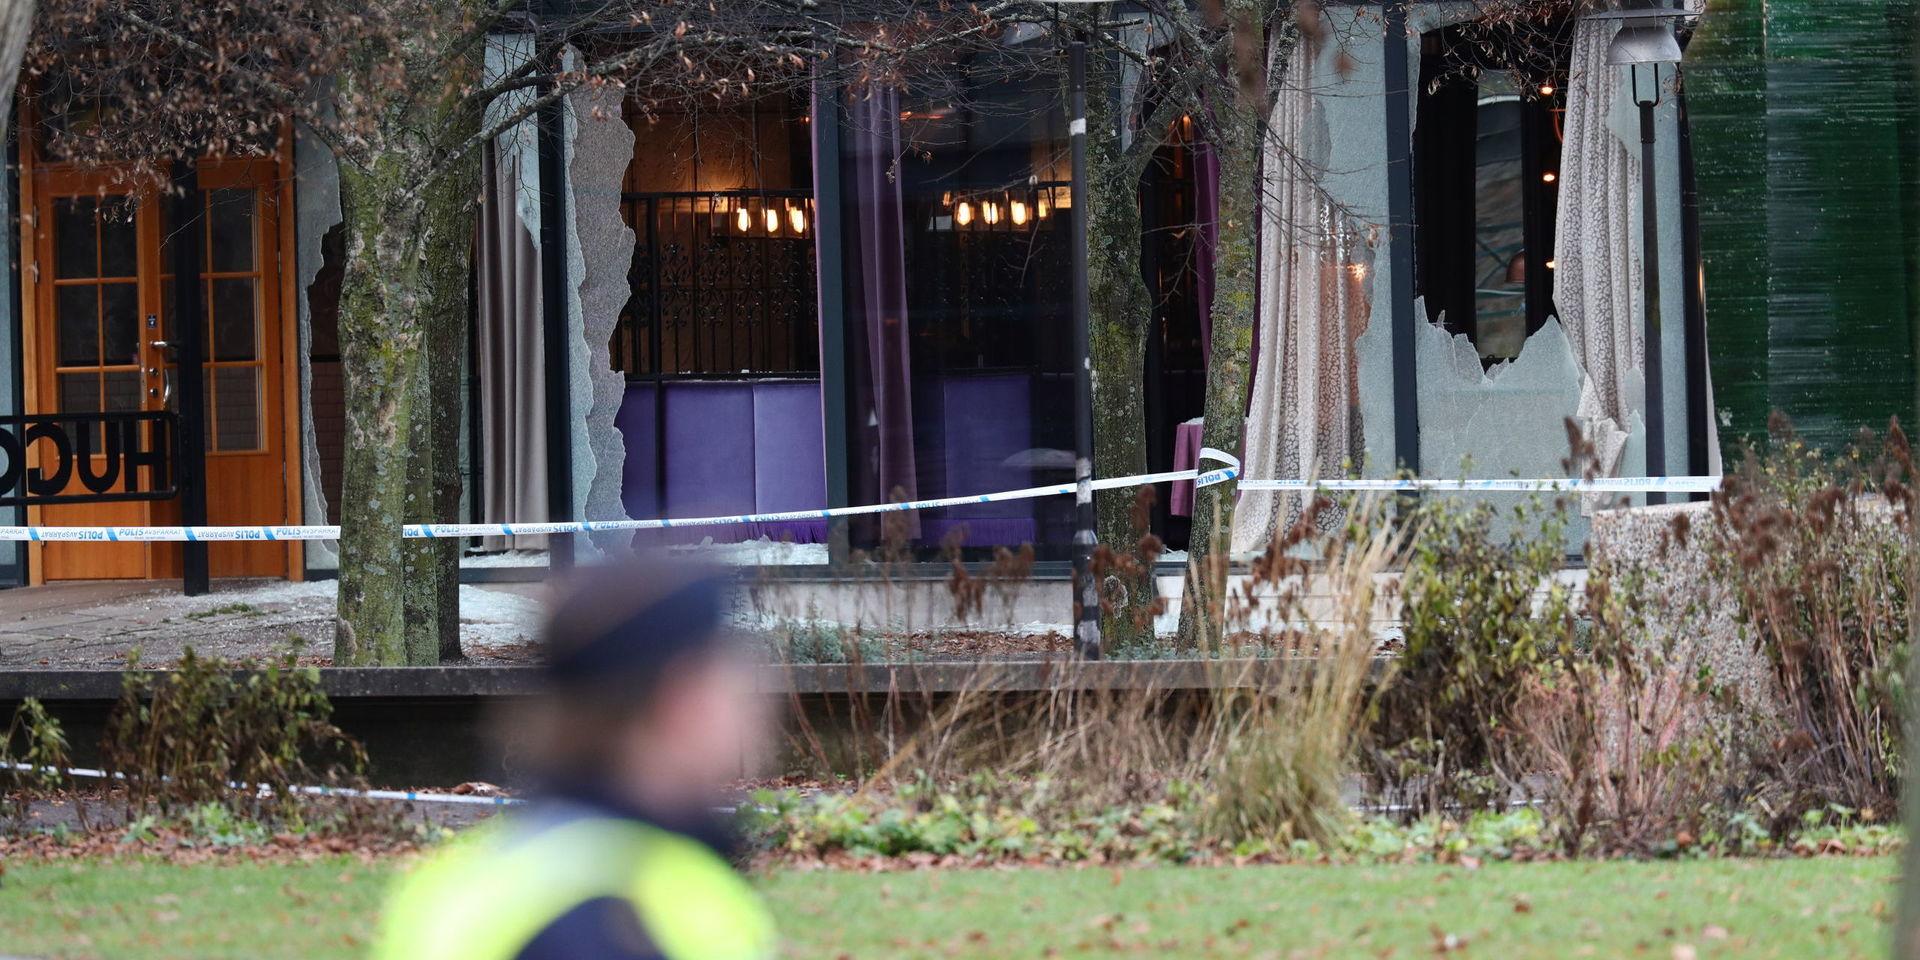 Två personer är döda efter en skottlossning som har inträffat utanför en nattklubb i centrala Norrköping. Polisen söker nu vittnen till händelsen.